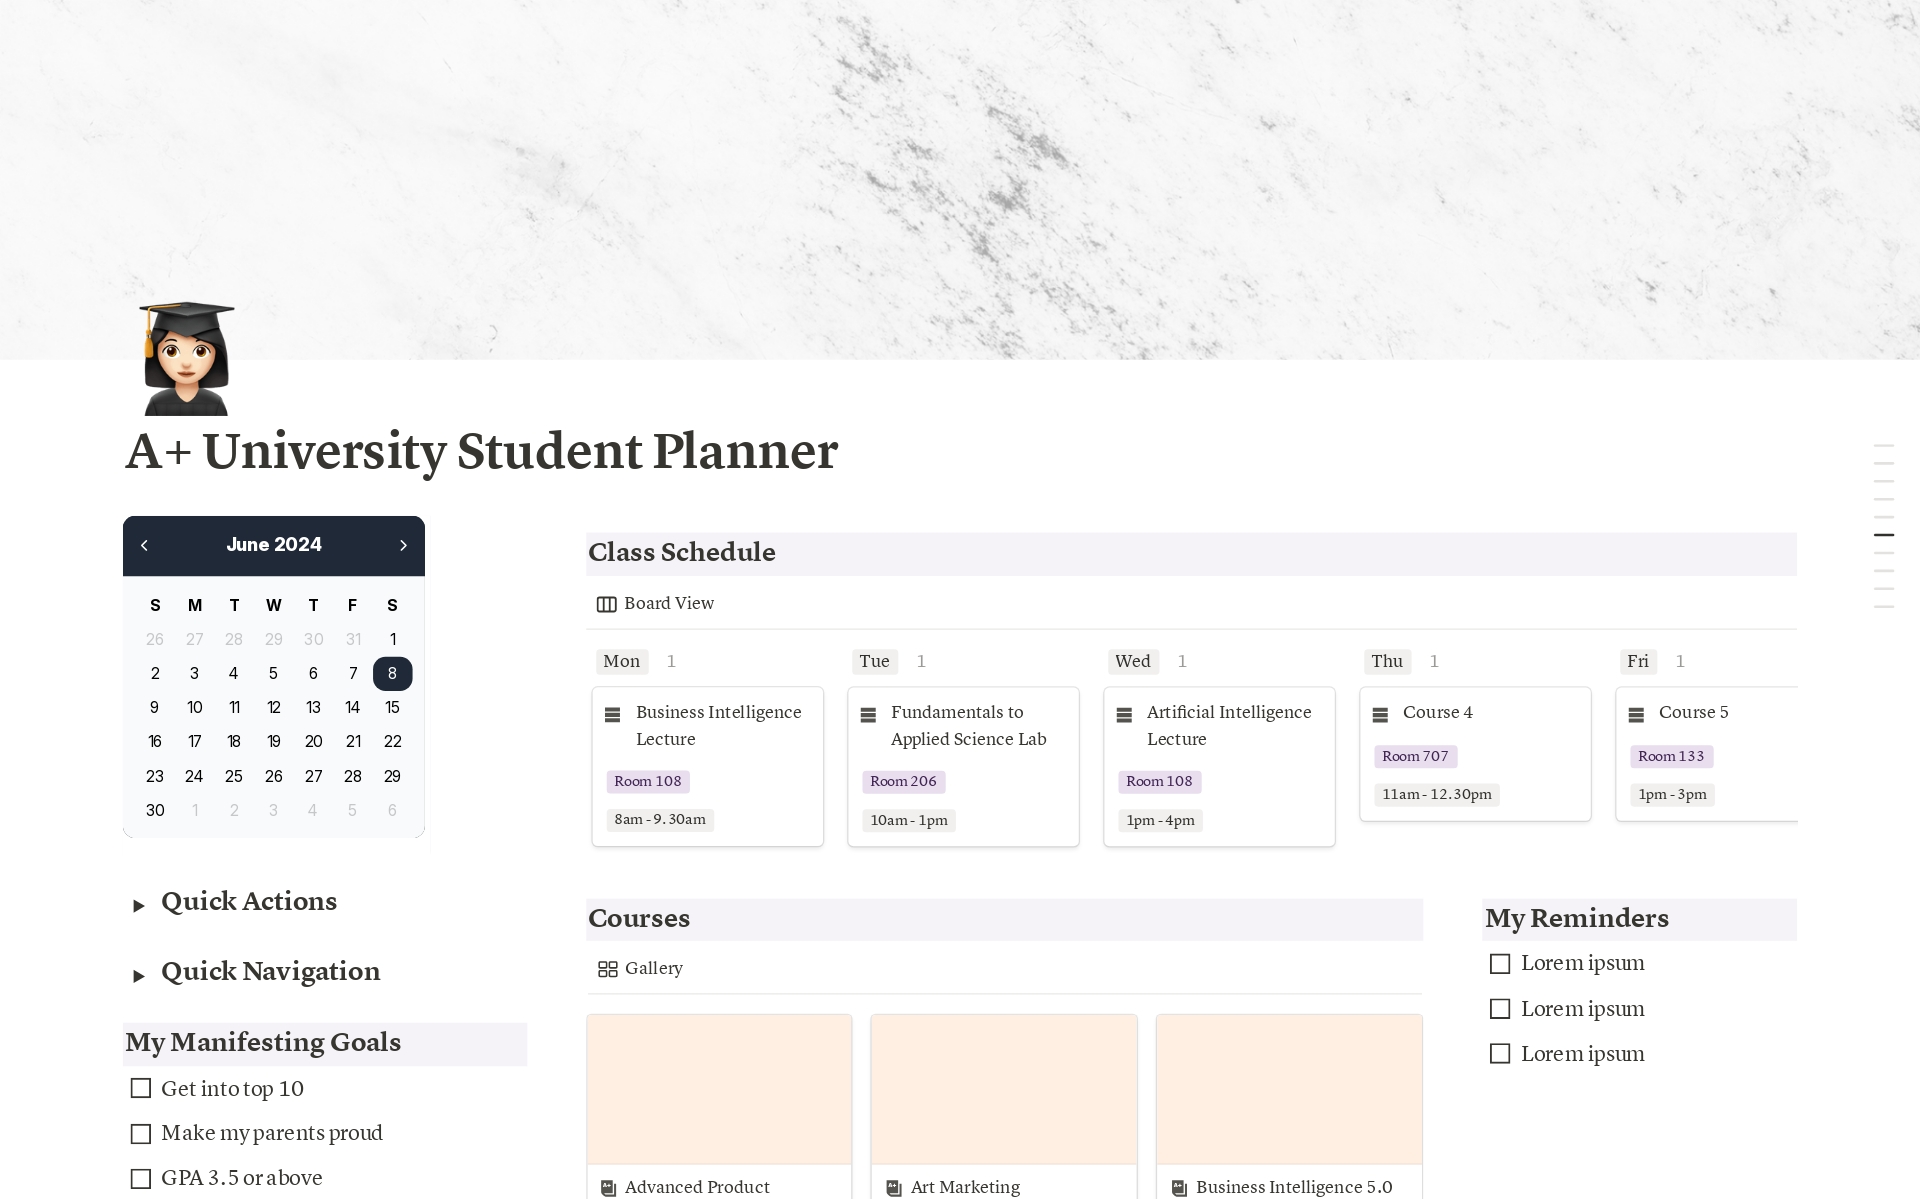 Uma prévia do modelo para A+ University Student Planner